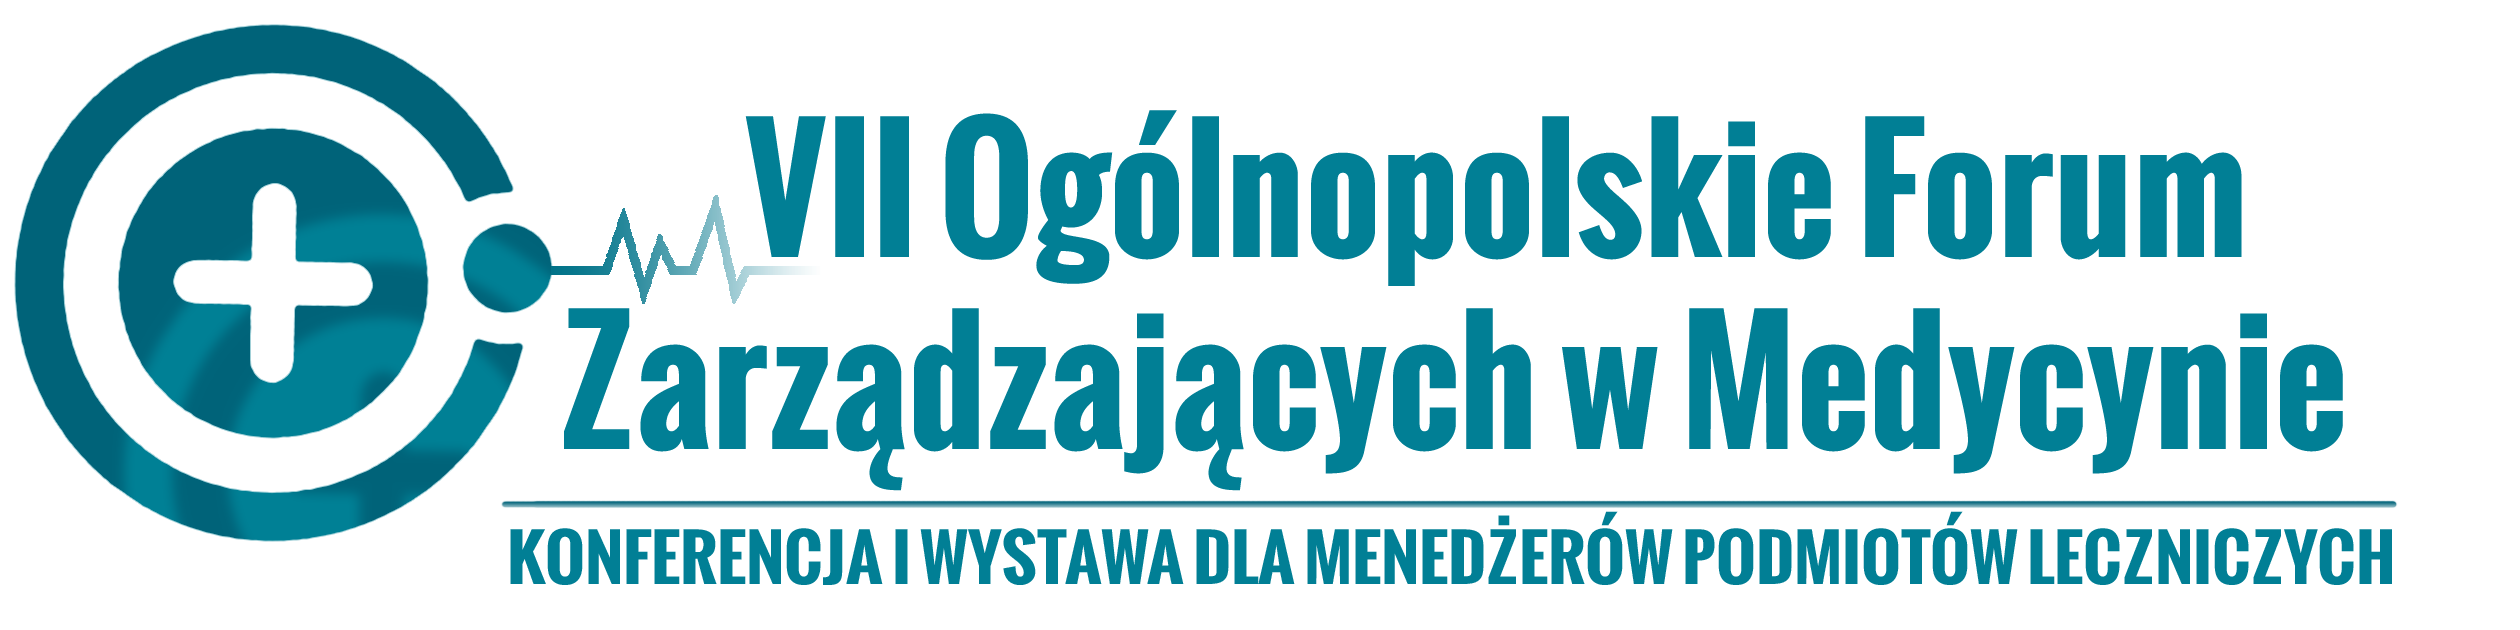 Ogólnopolskie Forum Zarządzających w Medycynie